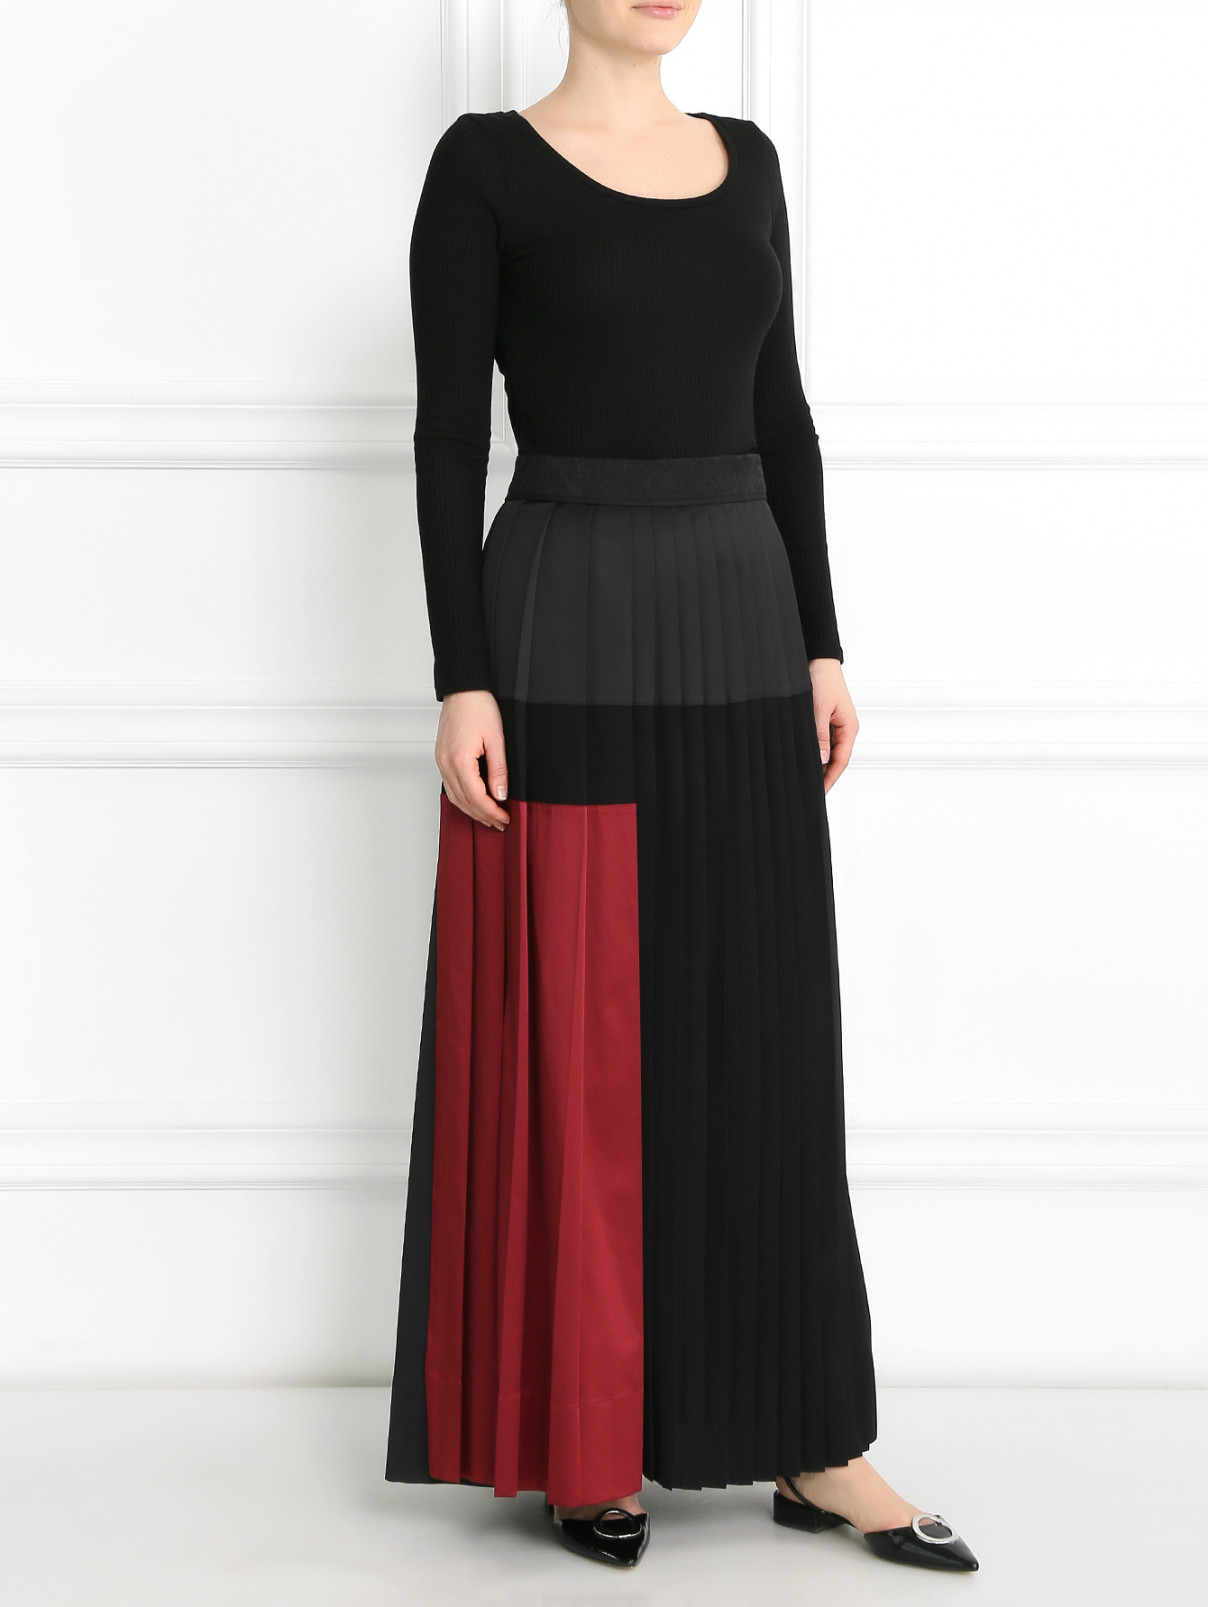 Плиссированная юбка-макси из смешанного хлопка Antonio Marras  –  Модель Общий вид  – Цвет:  Черный